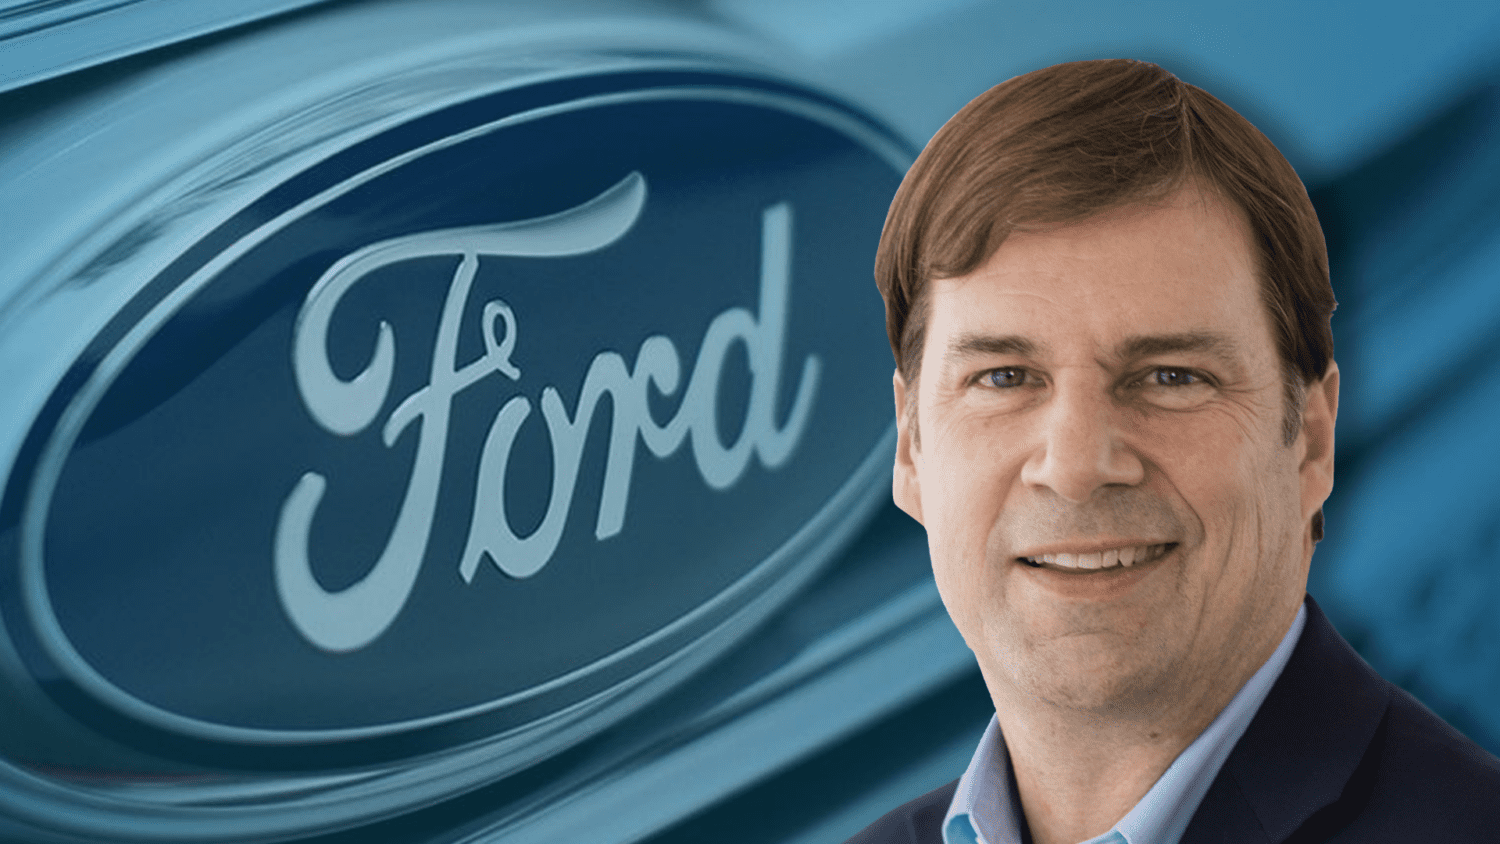 Ford Q2 earnings surpass expectations, raises shareholder dividend 50